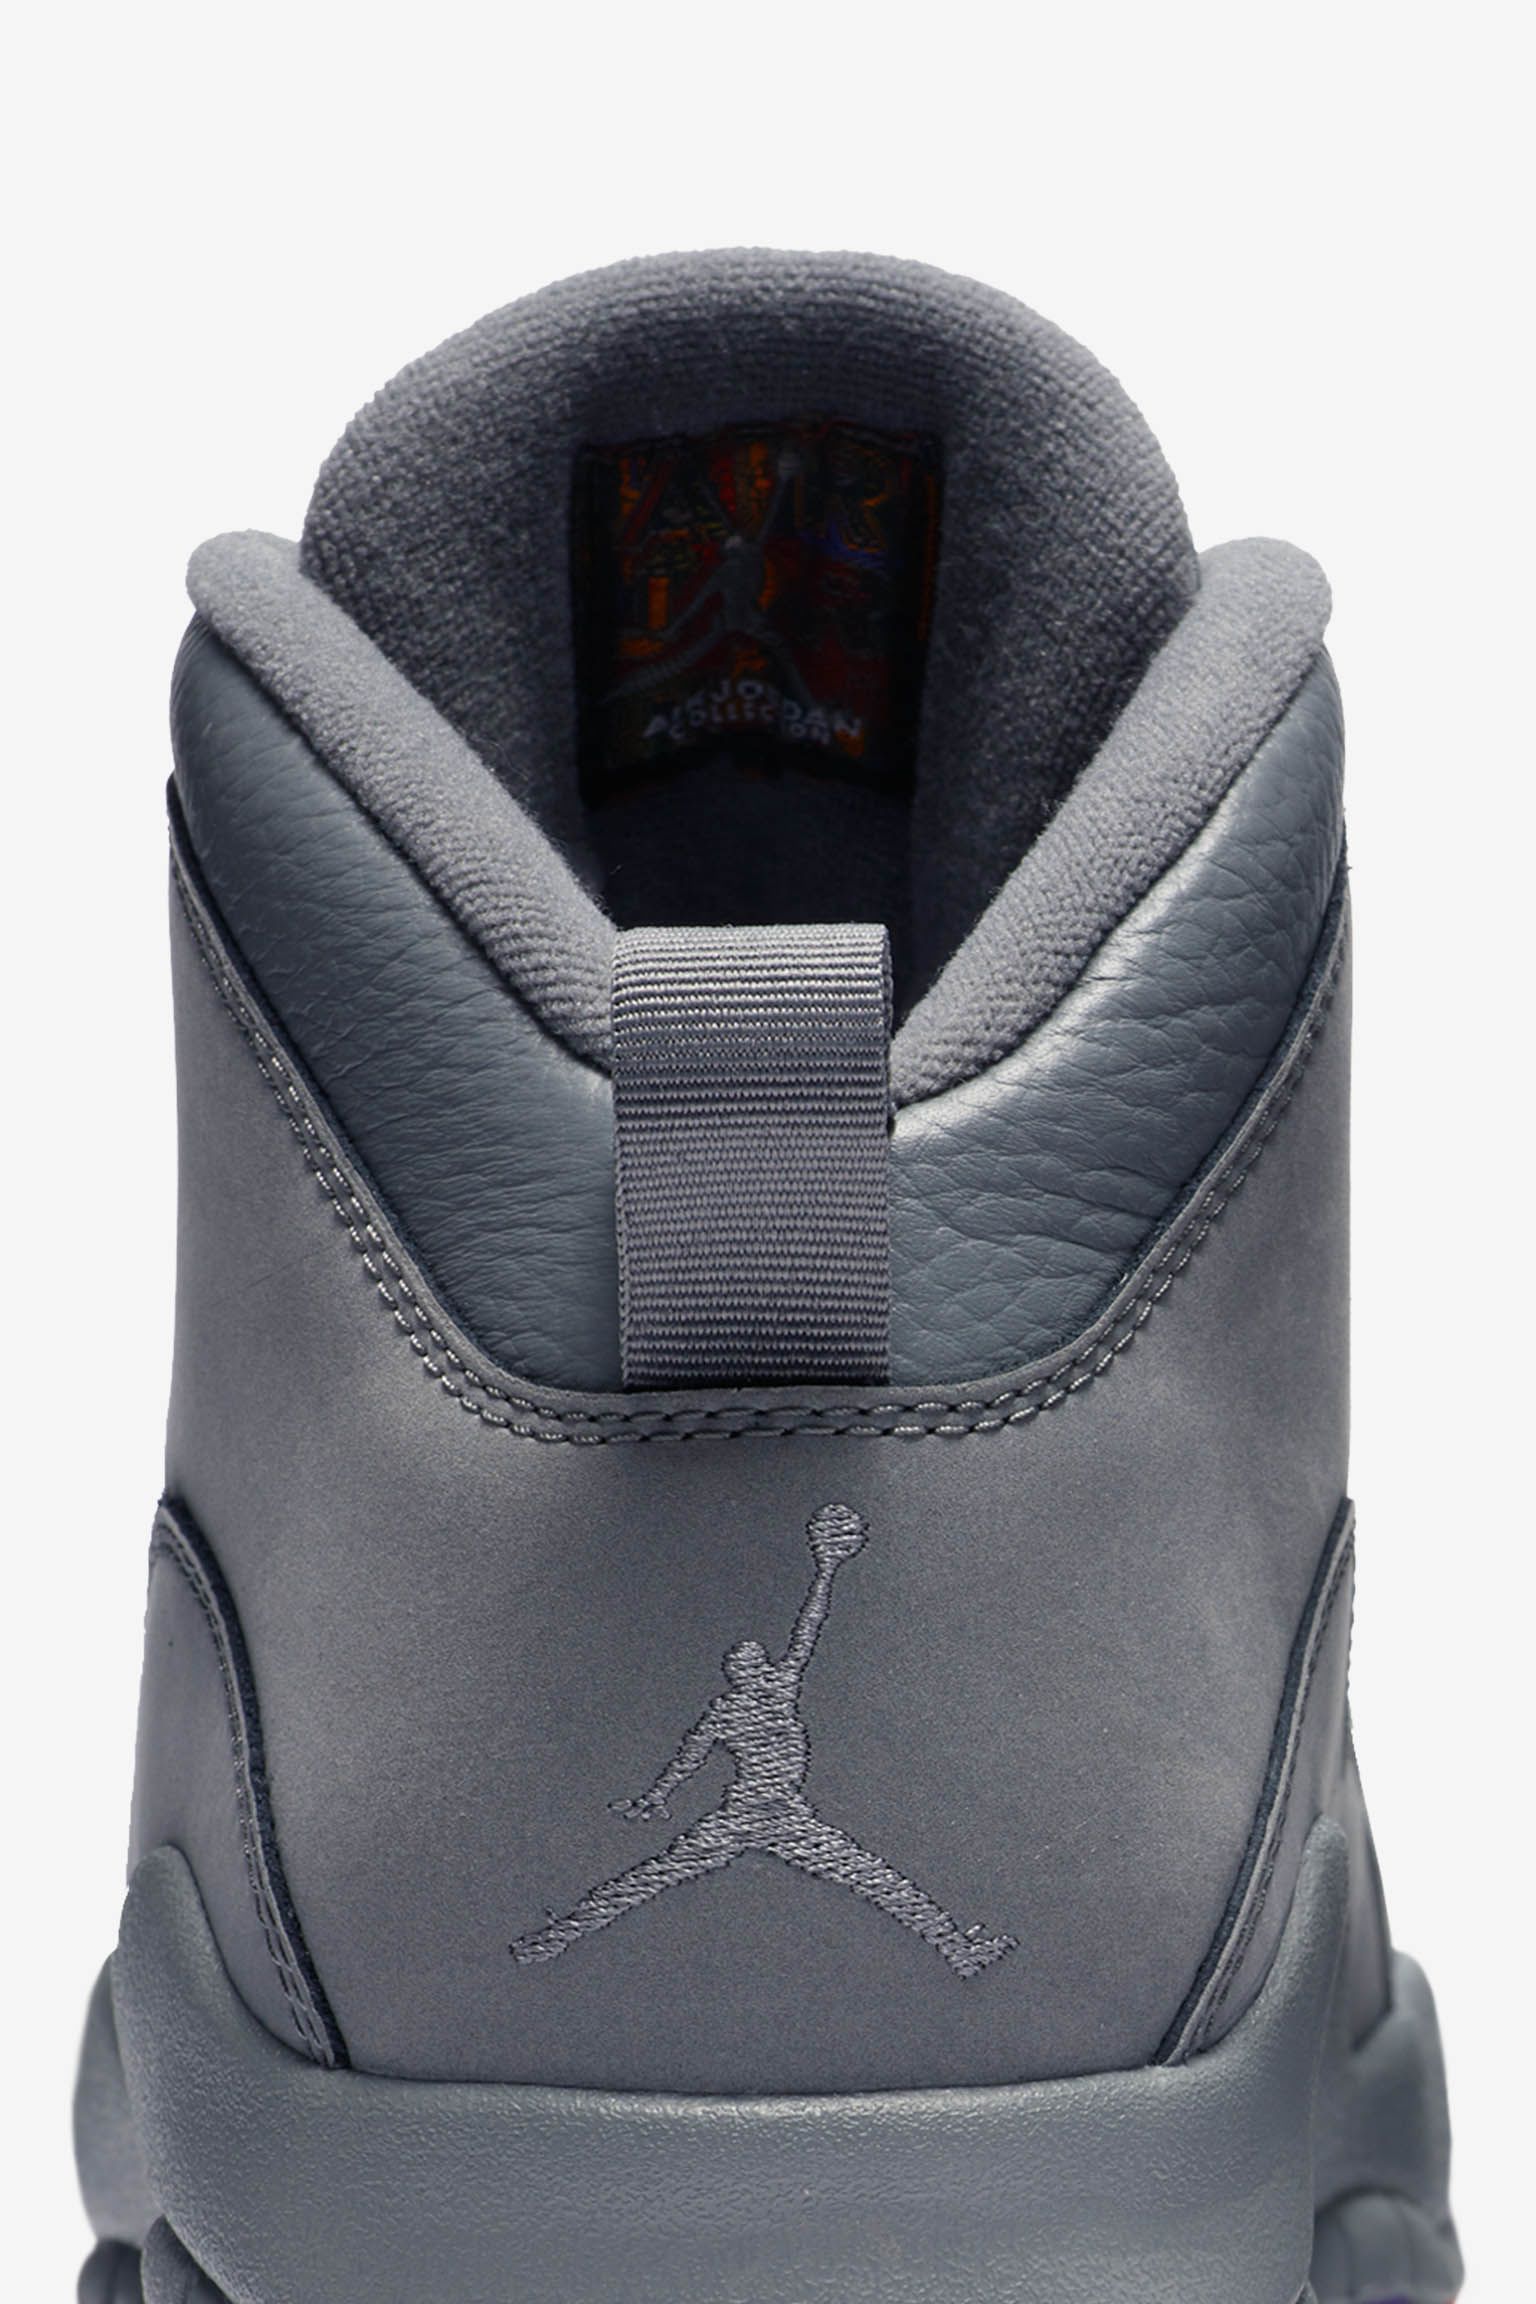 Air Jordan 10 'Cool Grey' Release Date 